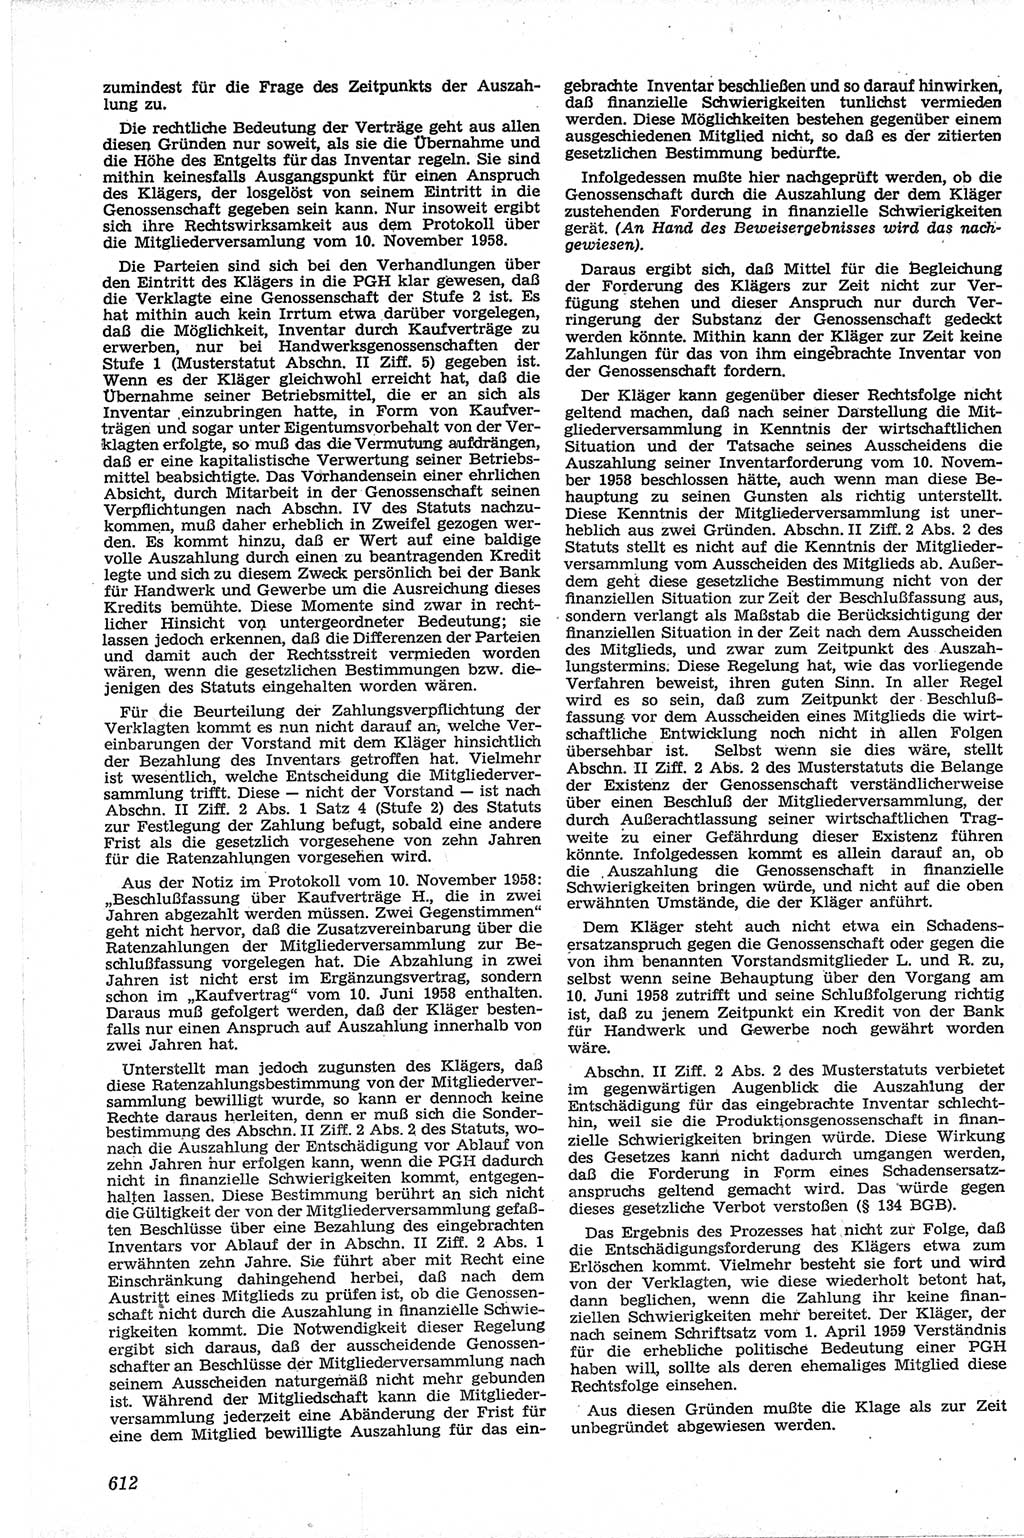 Neue Justiz (NJ), Zeitschrift für Recht und Rechtswissenschaft [Deutsche Demokratische Republik (DDR)], 13. Jahrgang 1959, Seite 612 (NJ DDR 1959, S. 612)